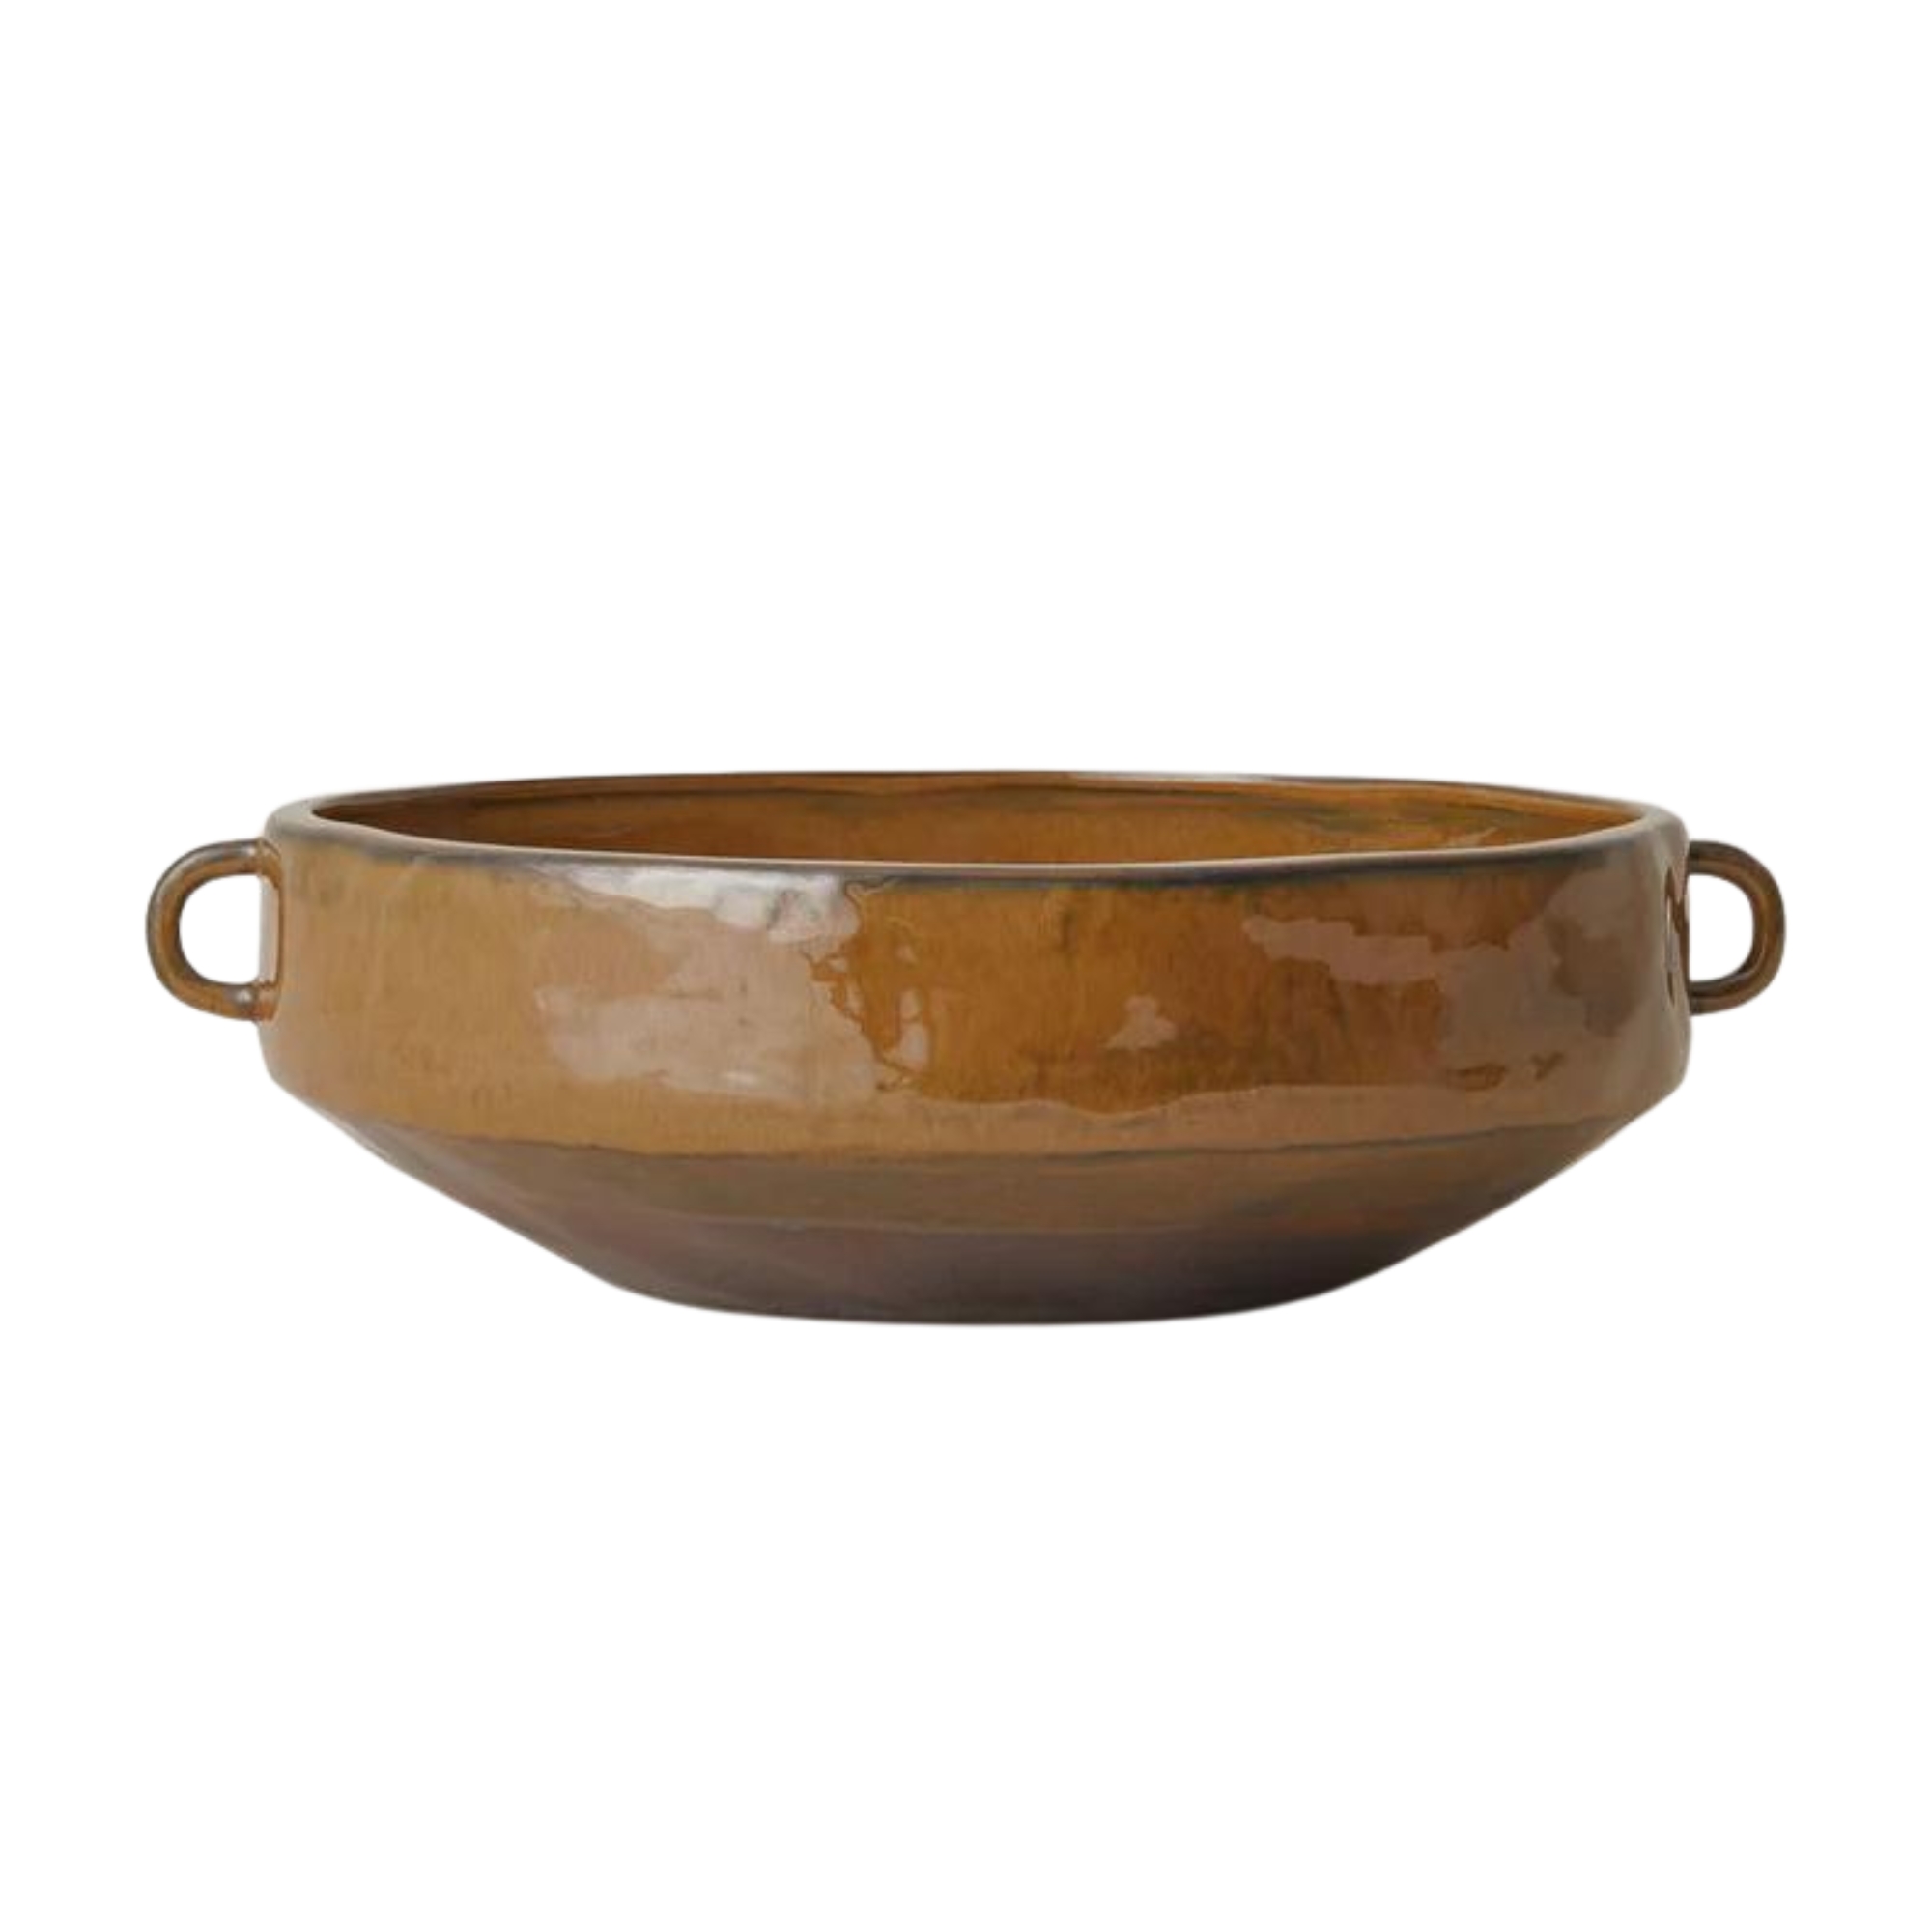 Rustic brown bowl